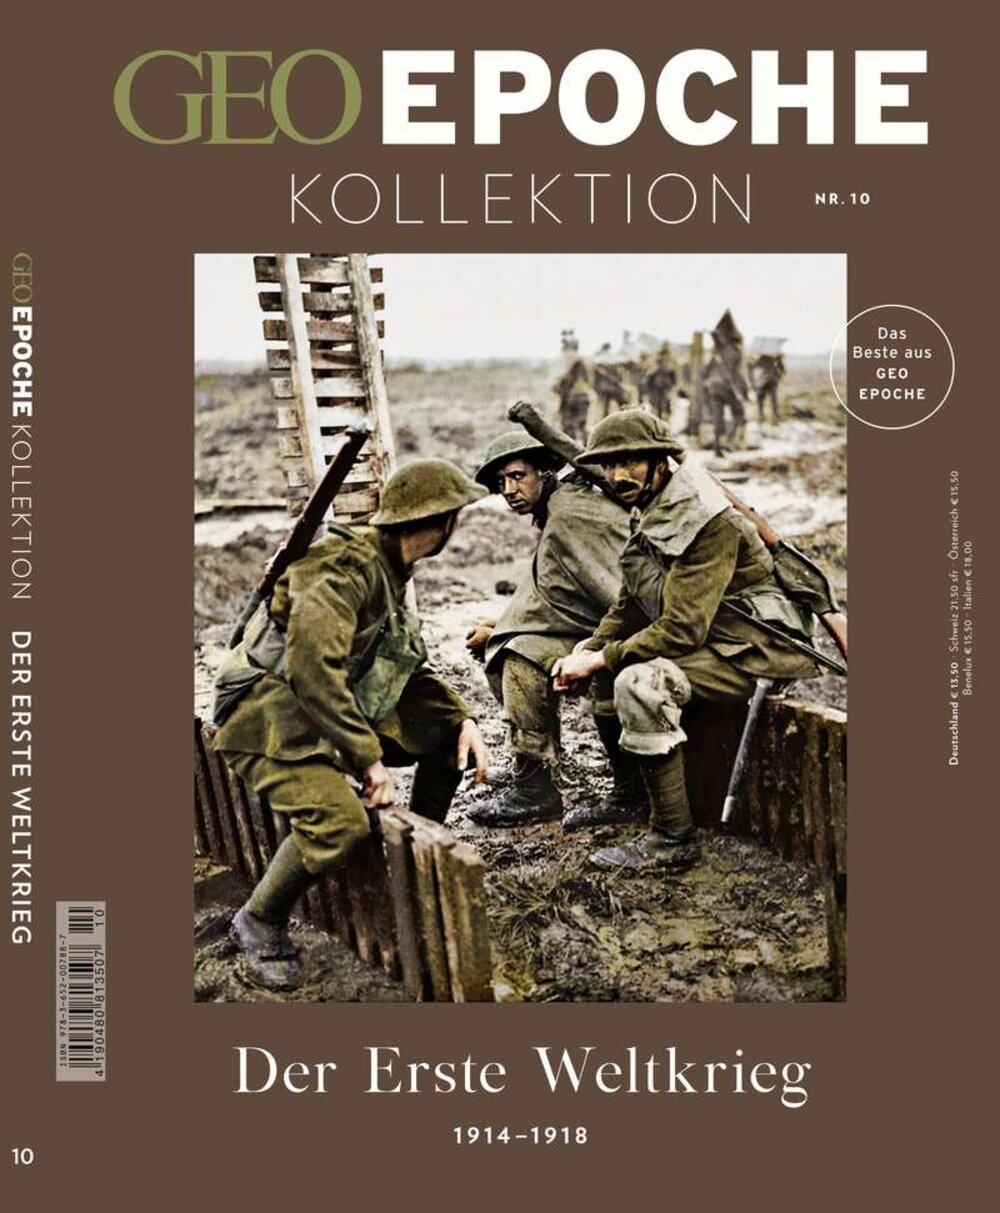 GEO EPOCHE KOLLEKTION „Der Erste Weltkrieg“